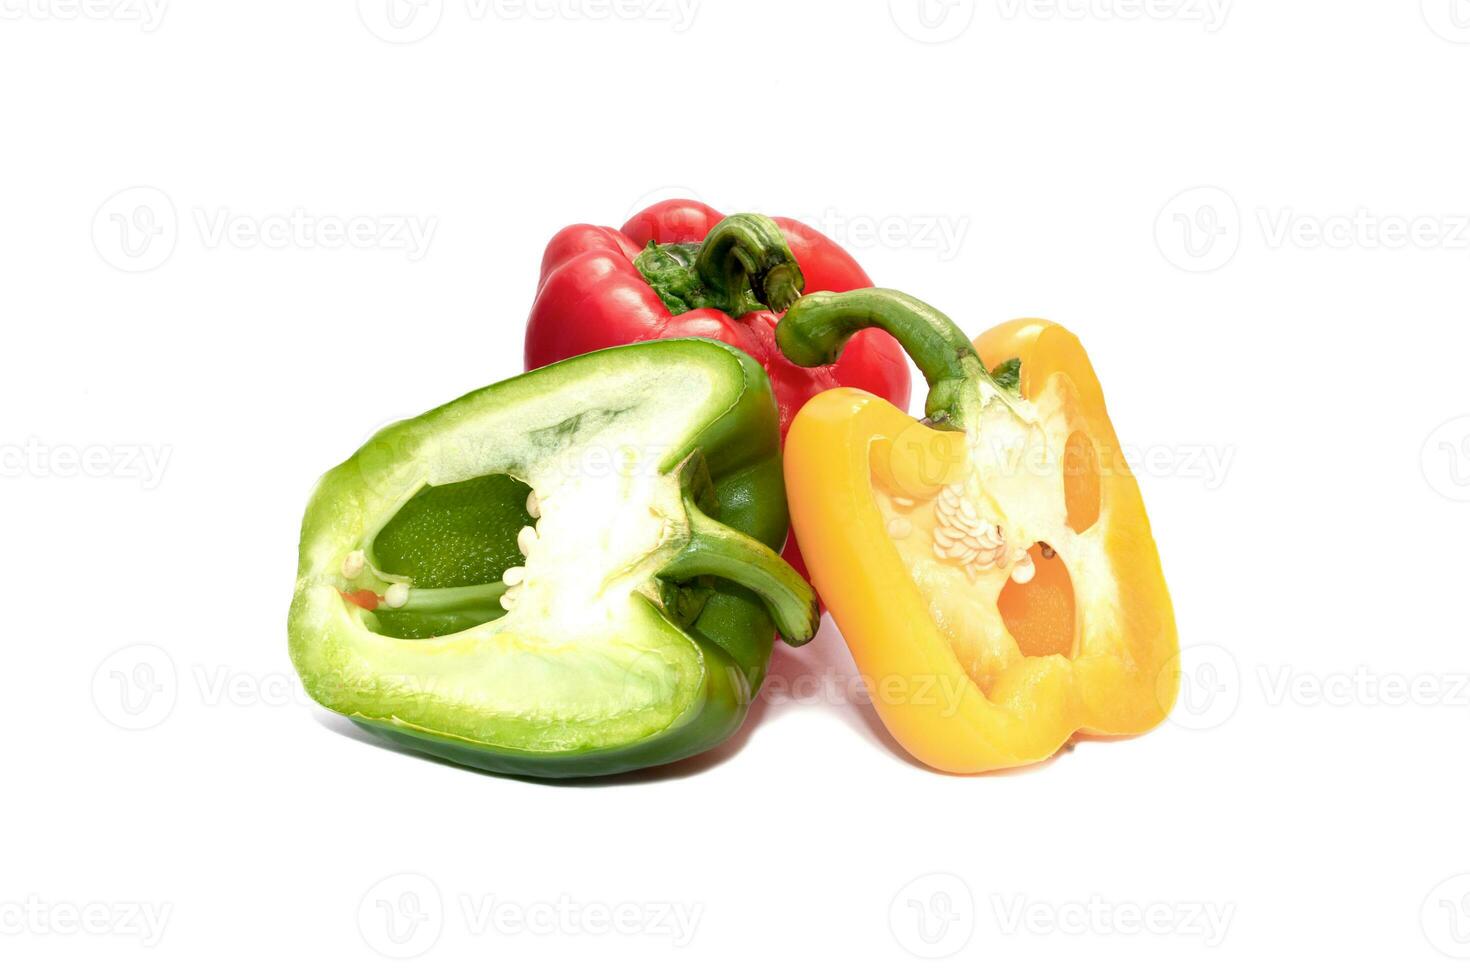 färsk röd, grön paprika isolerad på vit bakgrund. dietmat och veganskt koncept foto